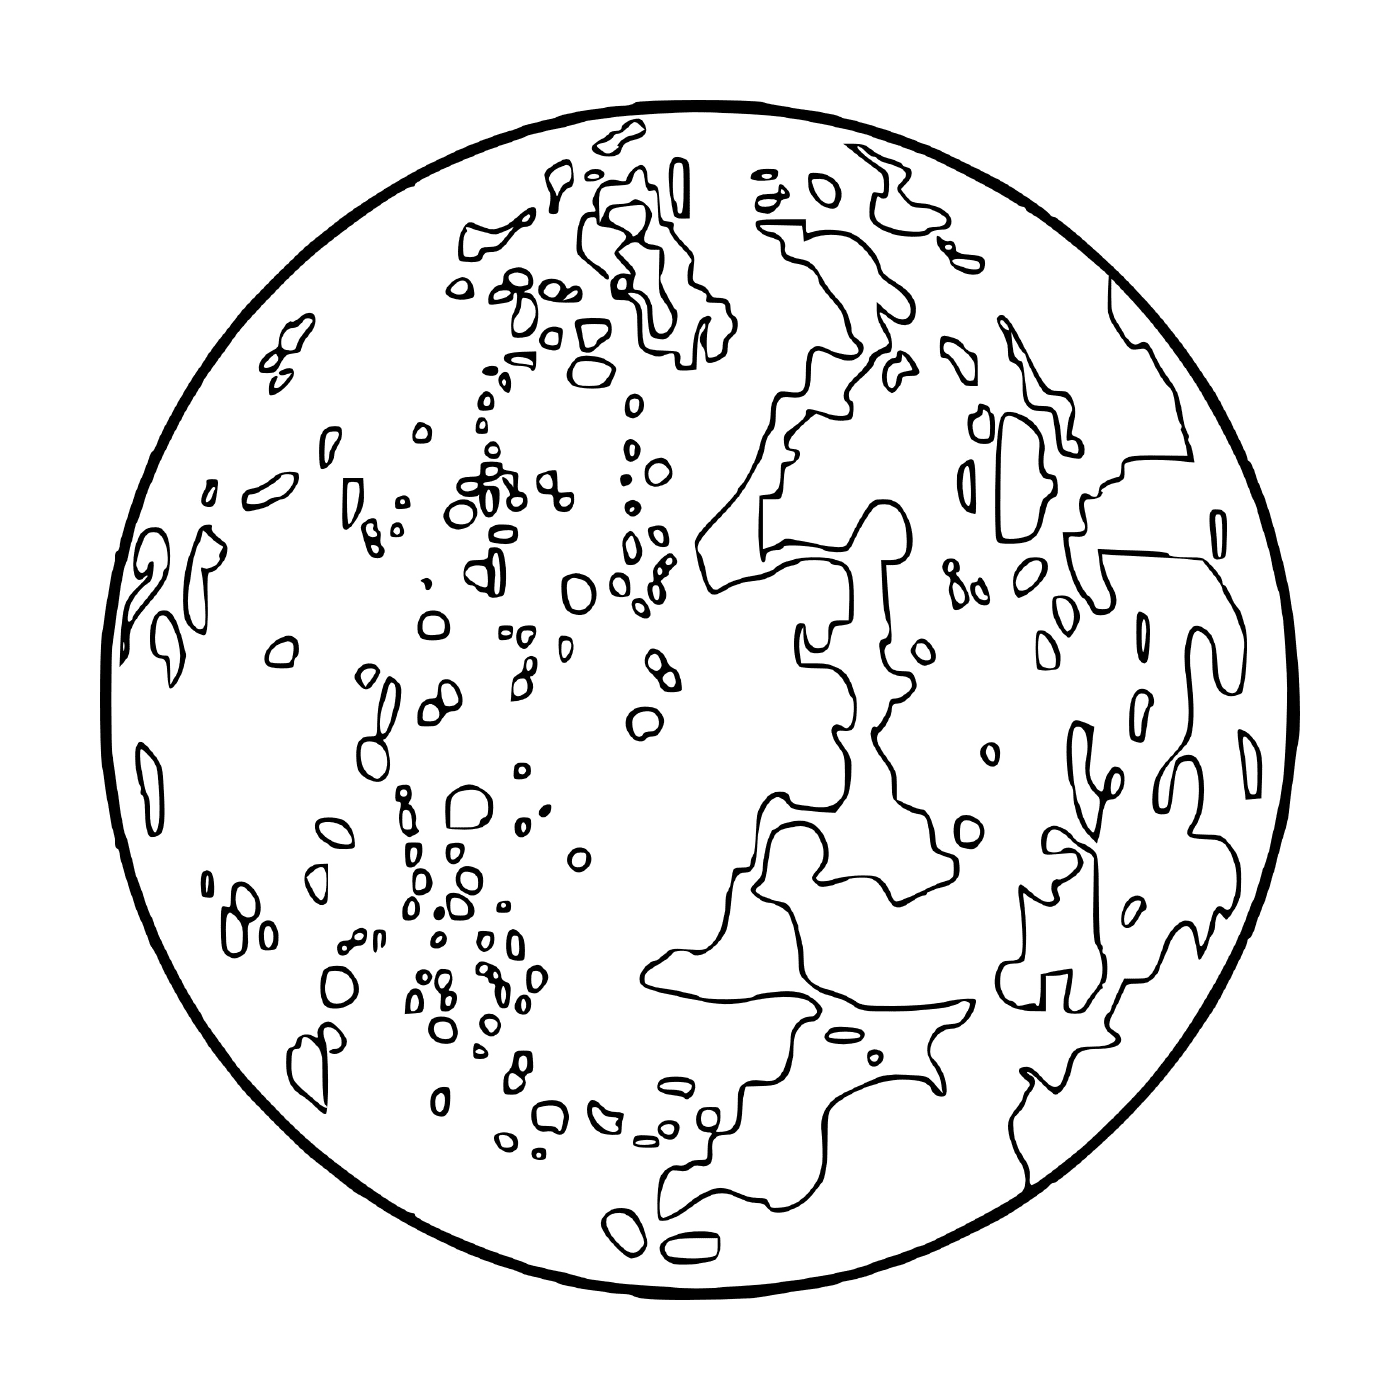  Луна со многими кратерами 